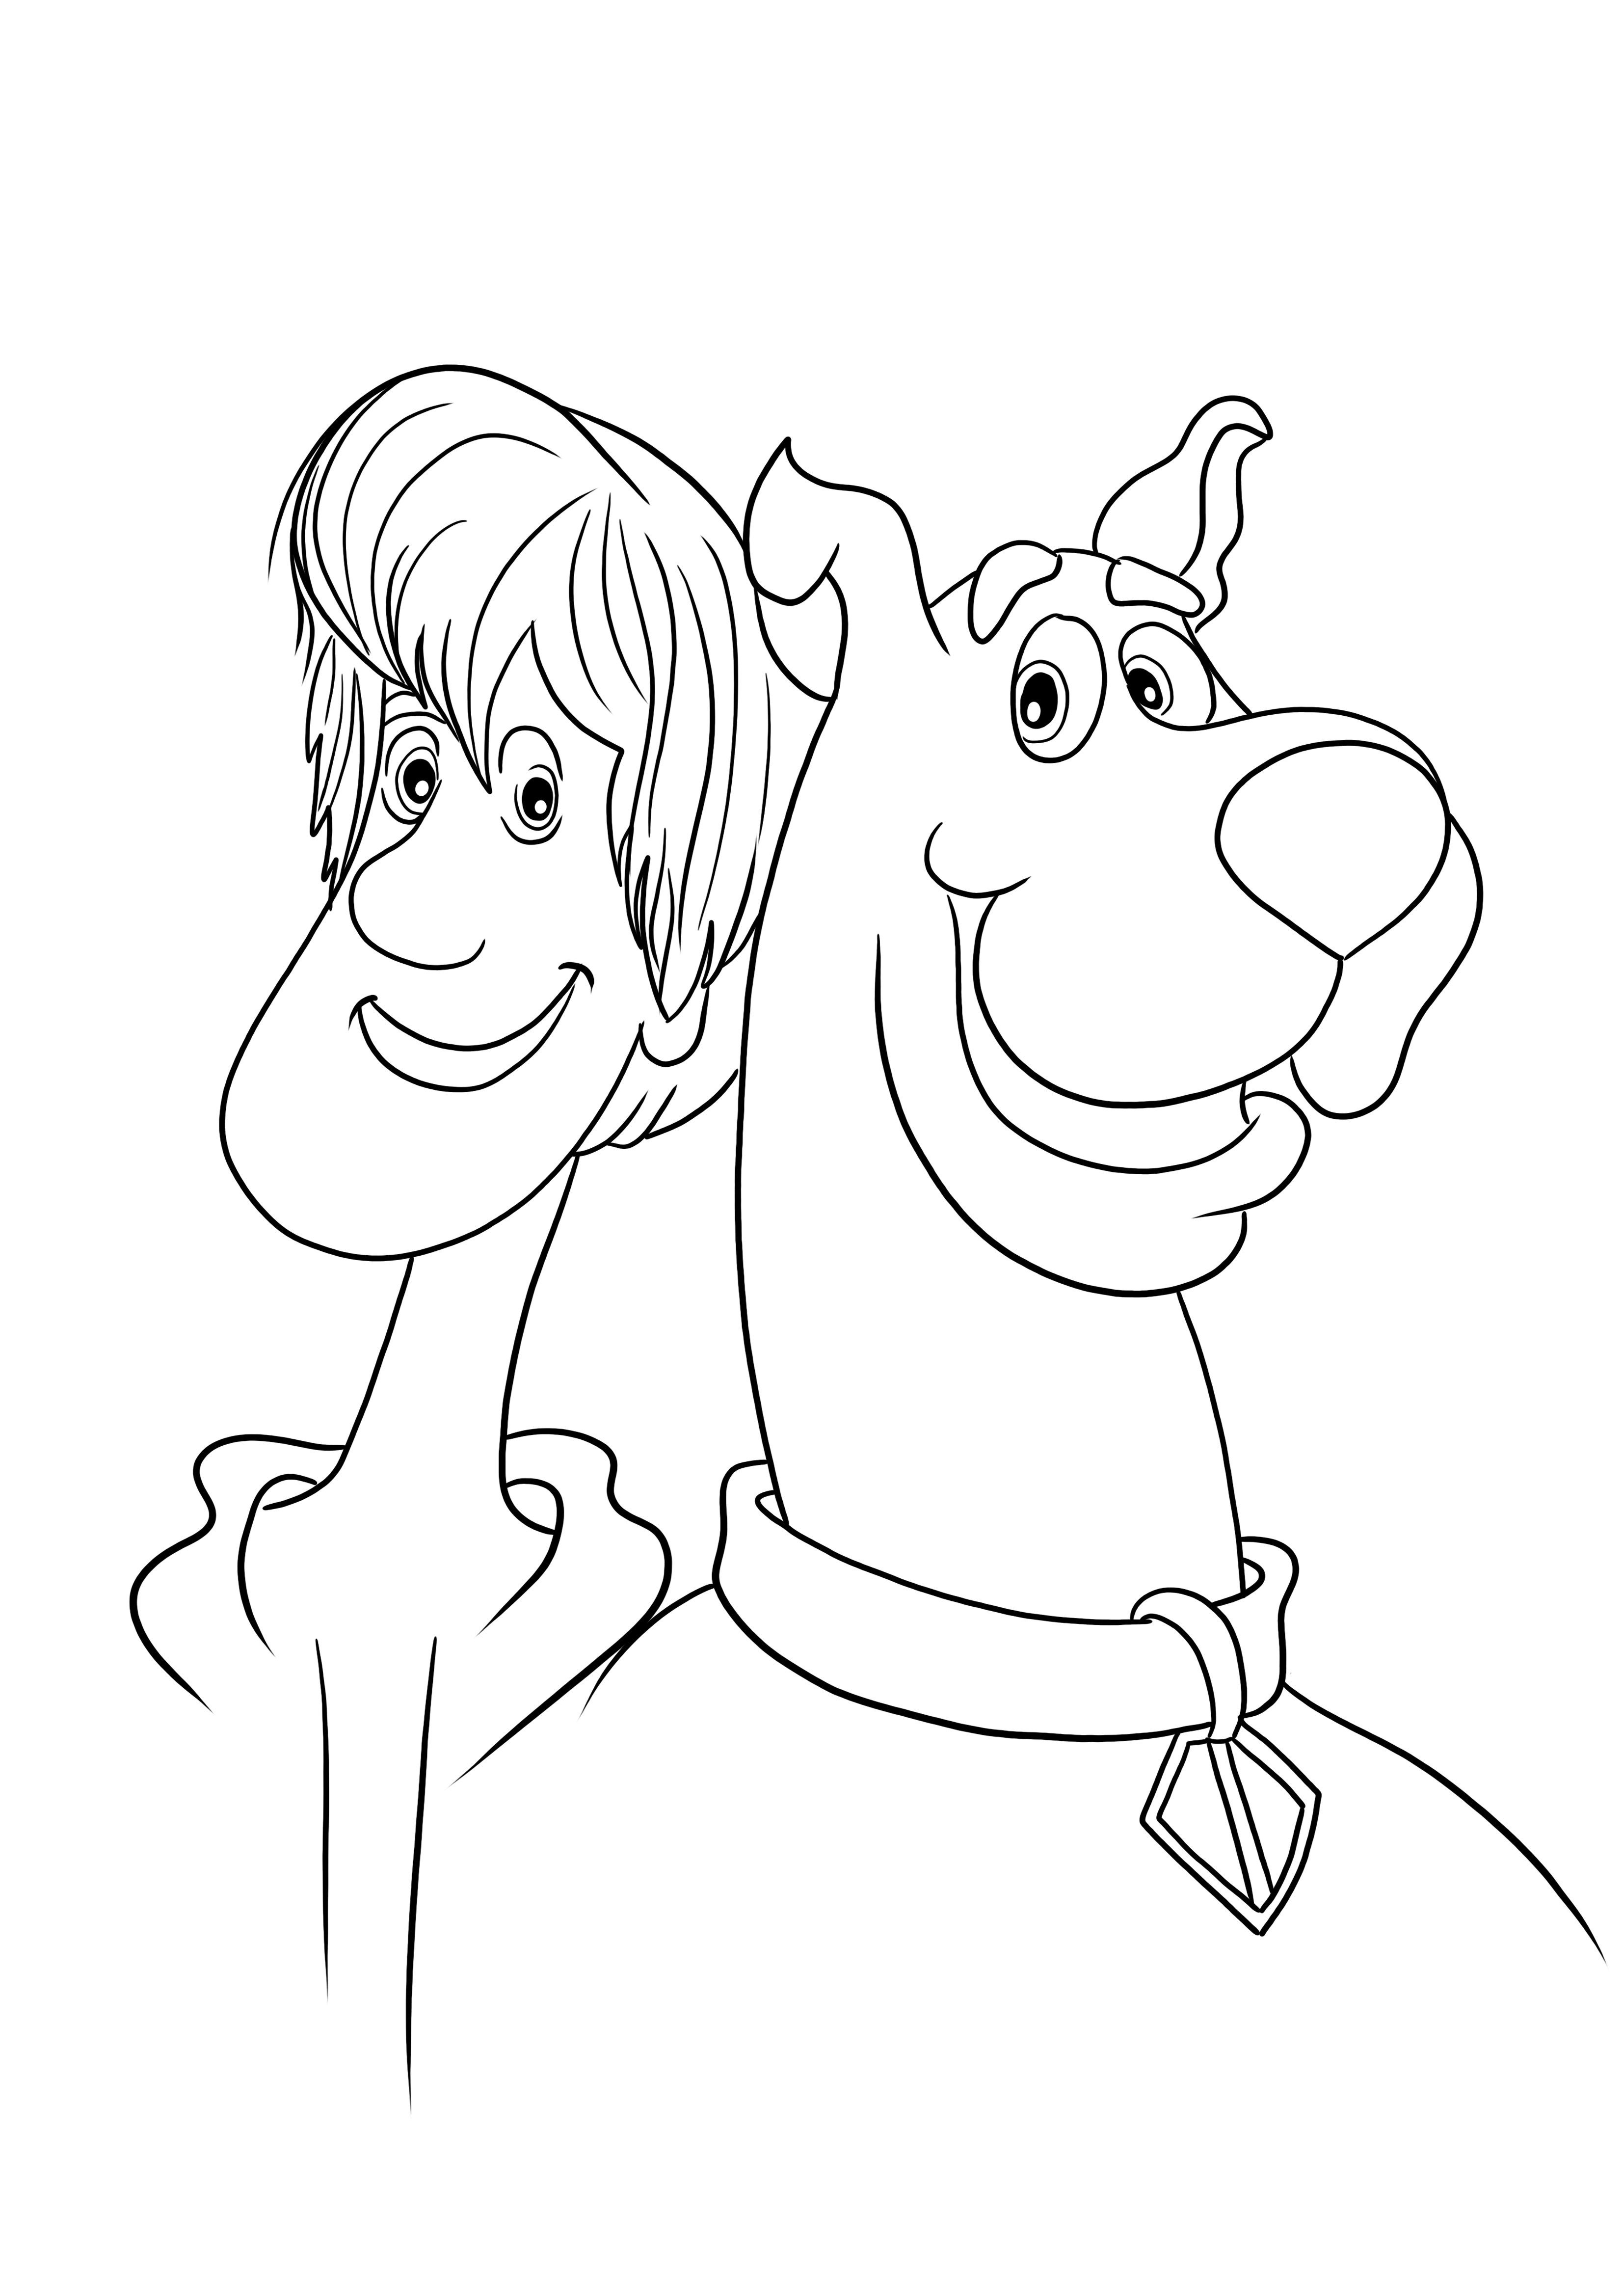 Zabawny Kudłaty i jego przyjaciel Scooby łatwa do pokolorowania i wydrukowania strona dla dzieci